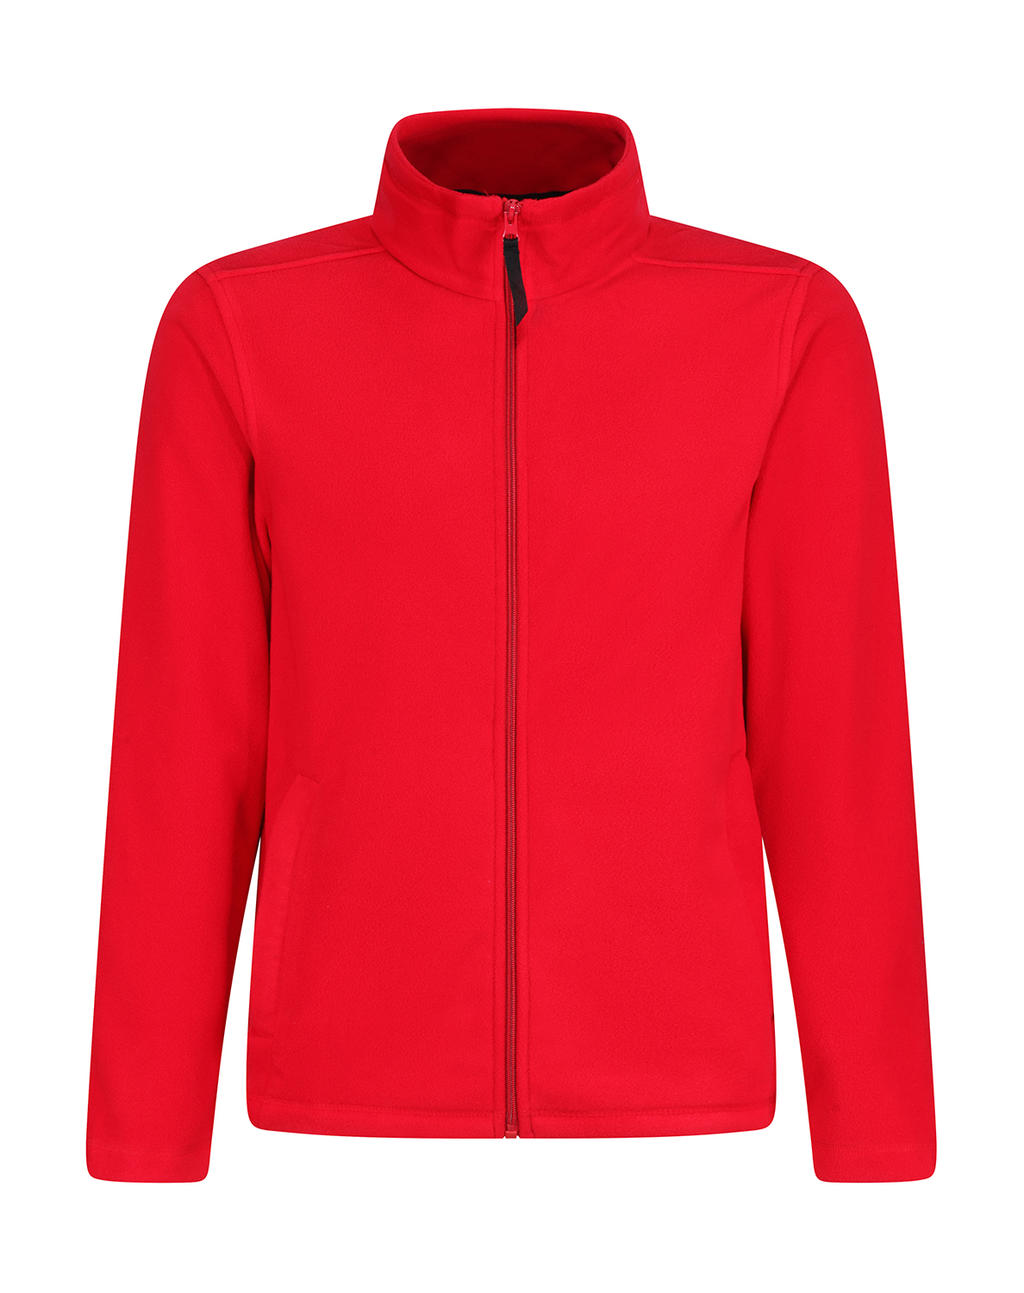  Micro Full Zip Fleece in Farbe Classic Red